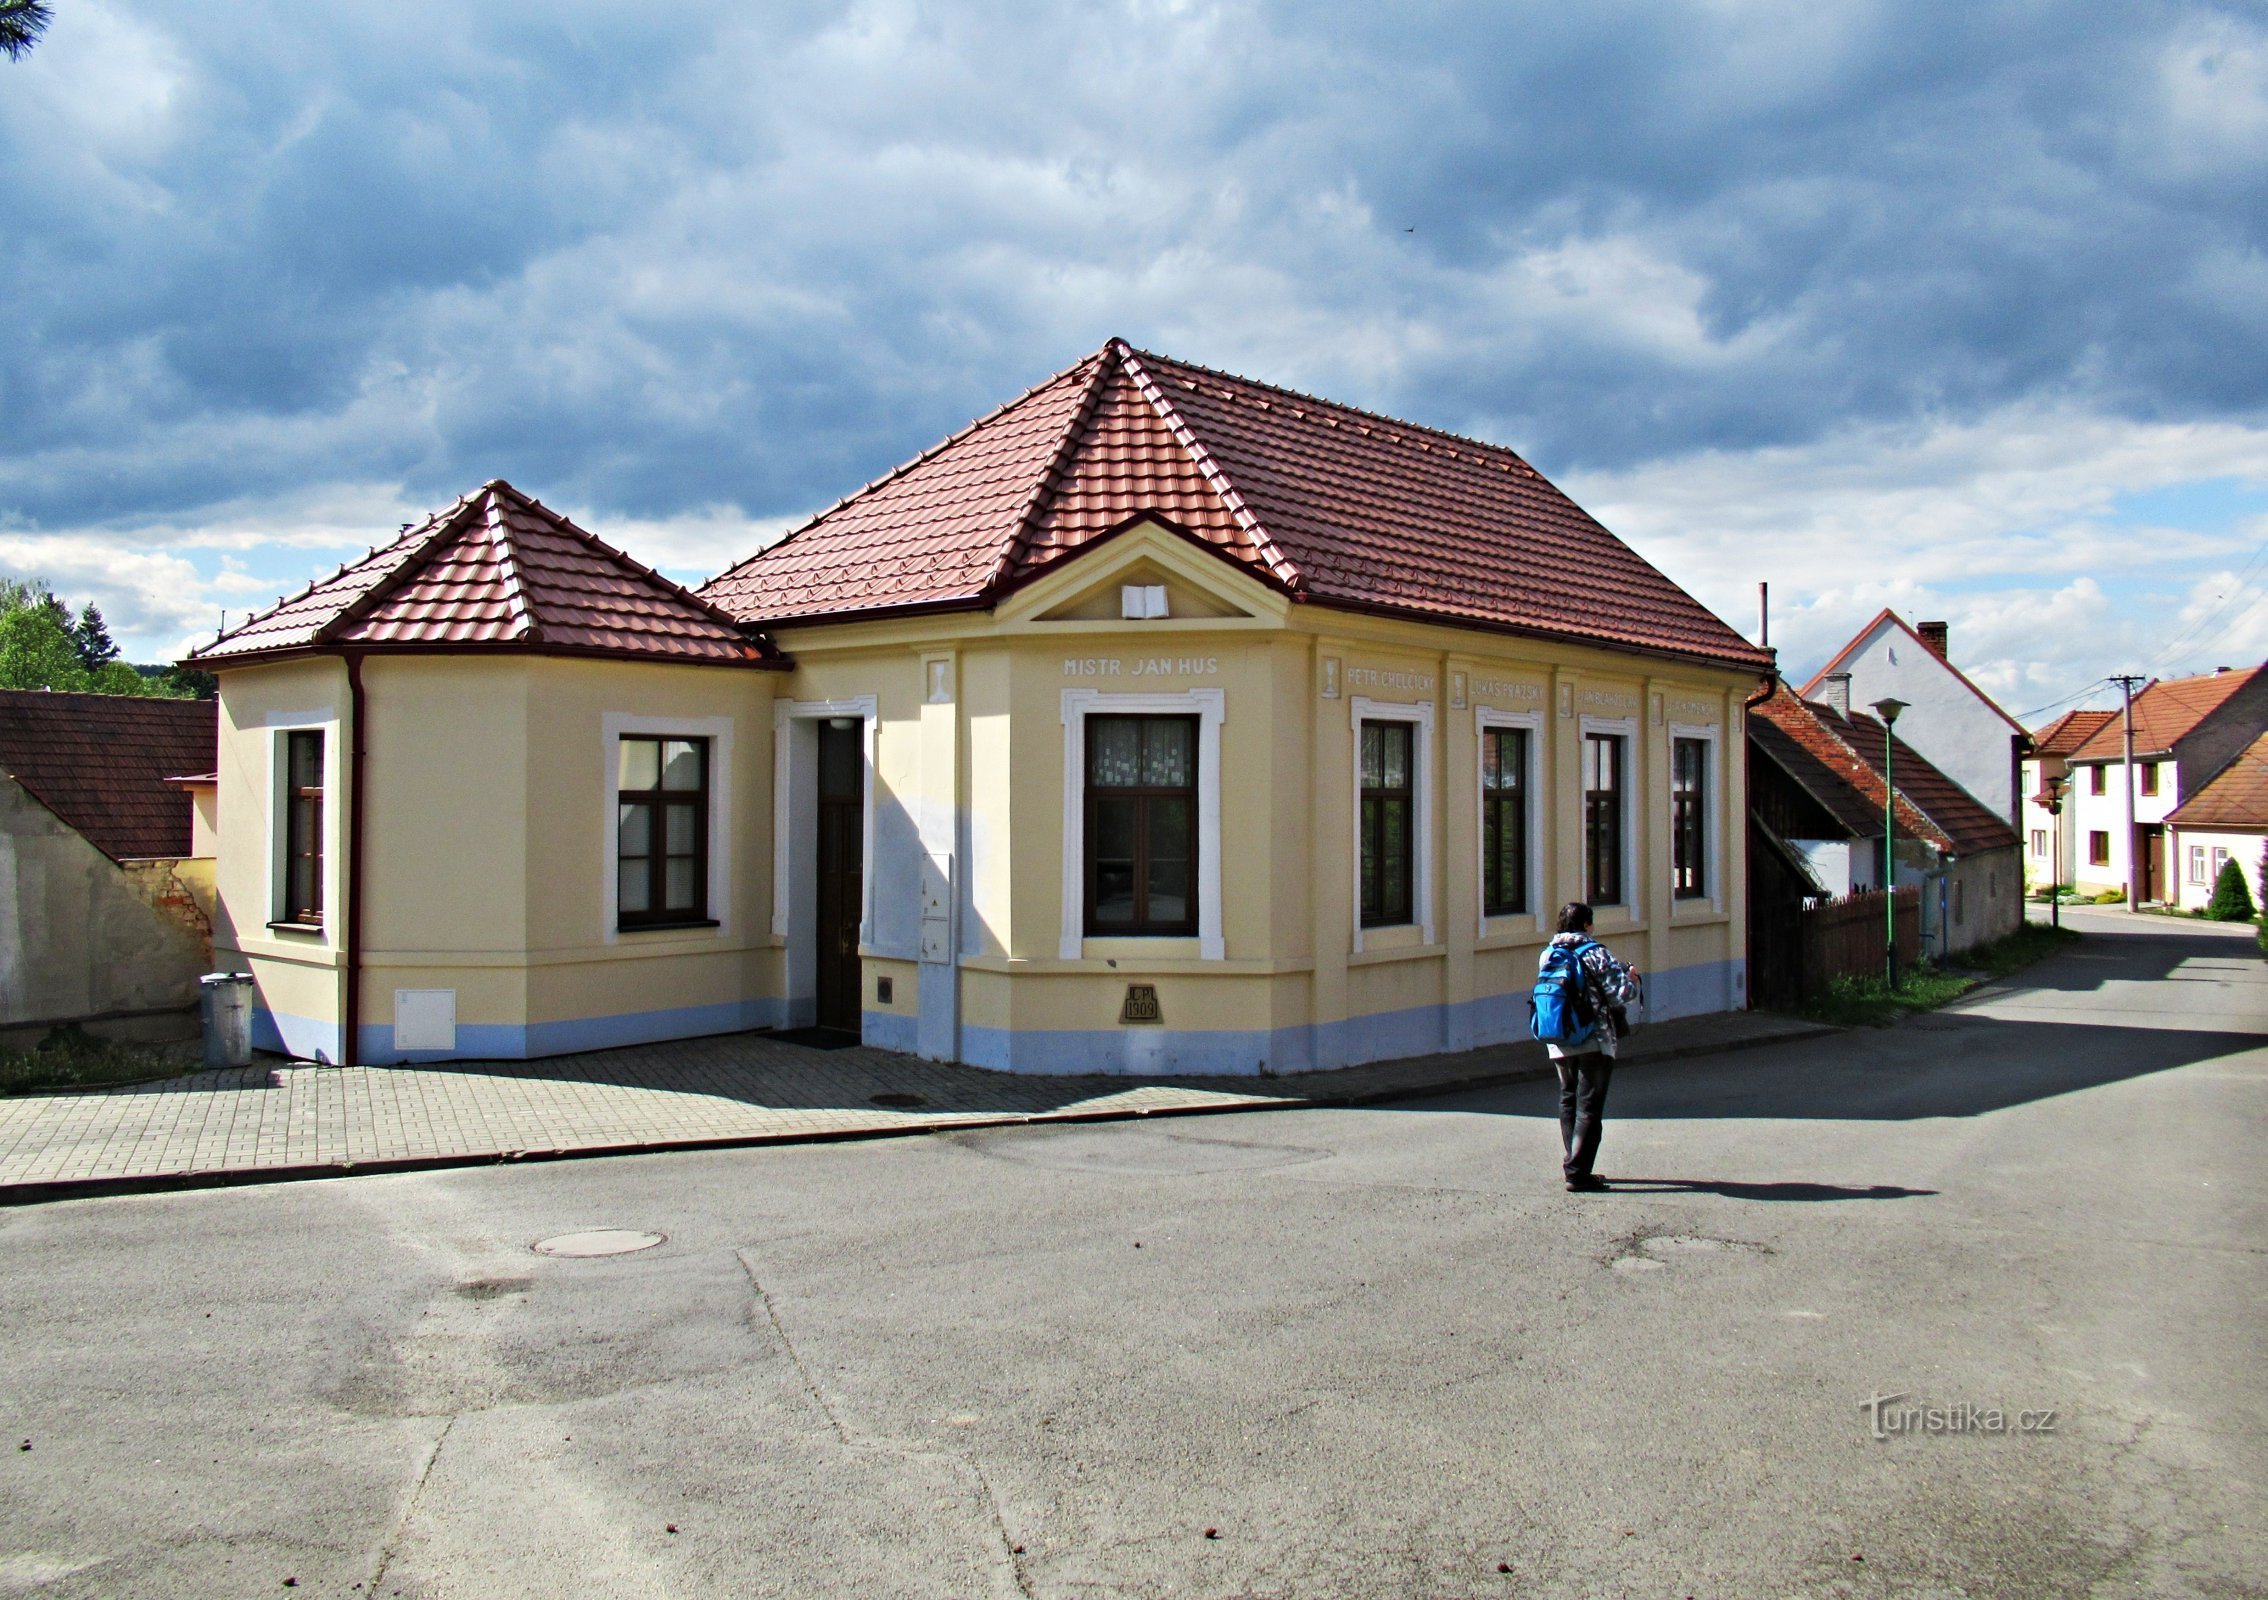 Uma aldeia em Slovácko - Javorník